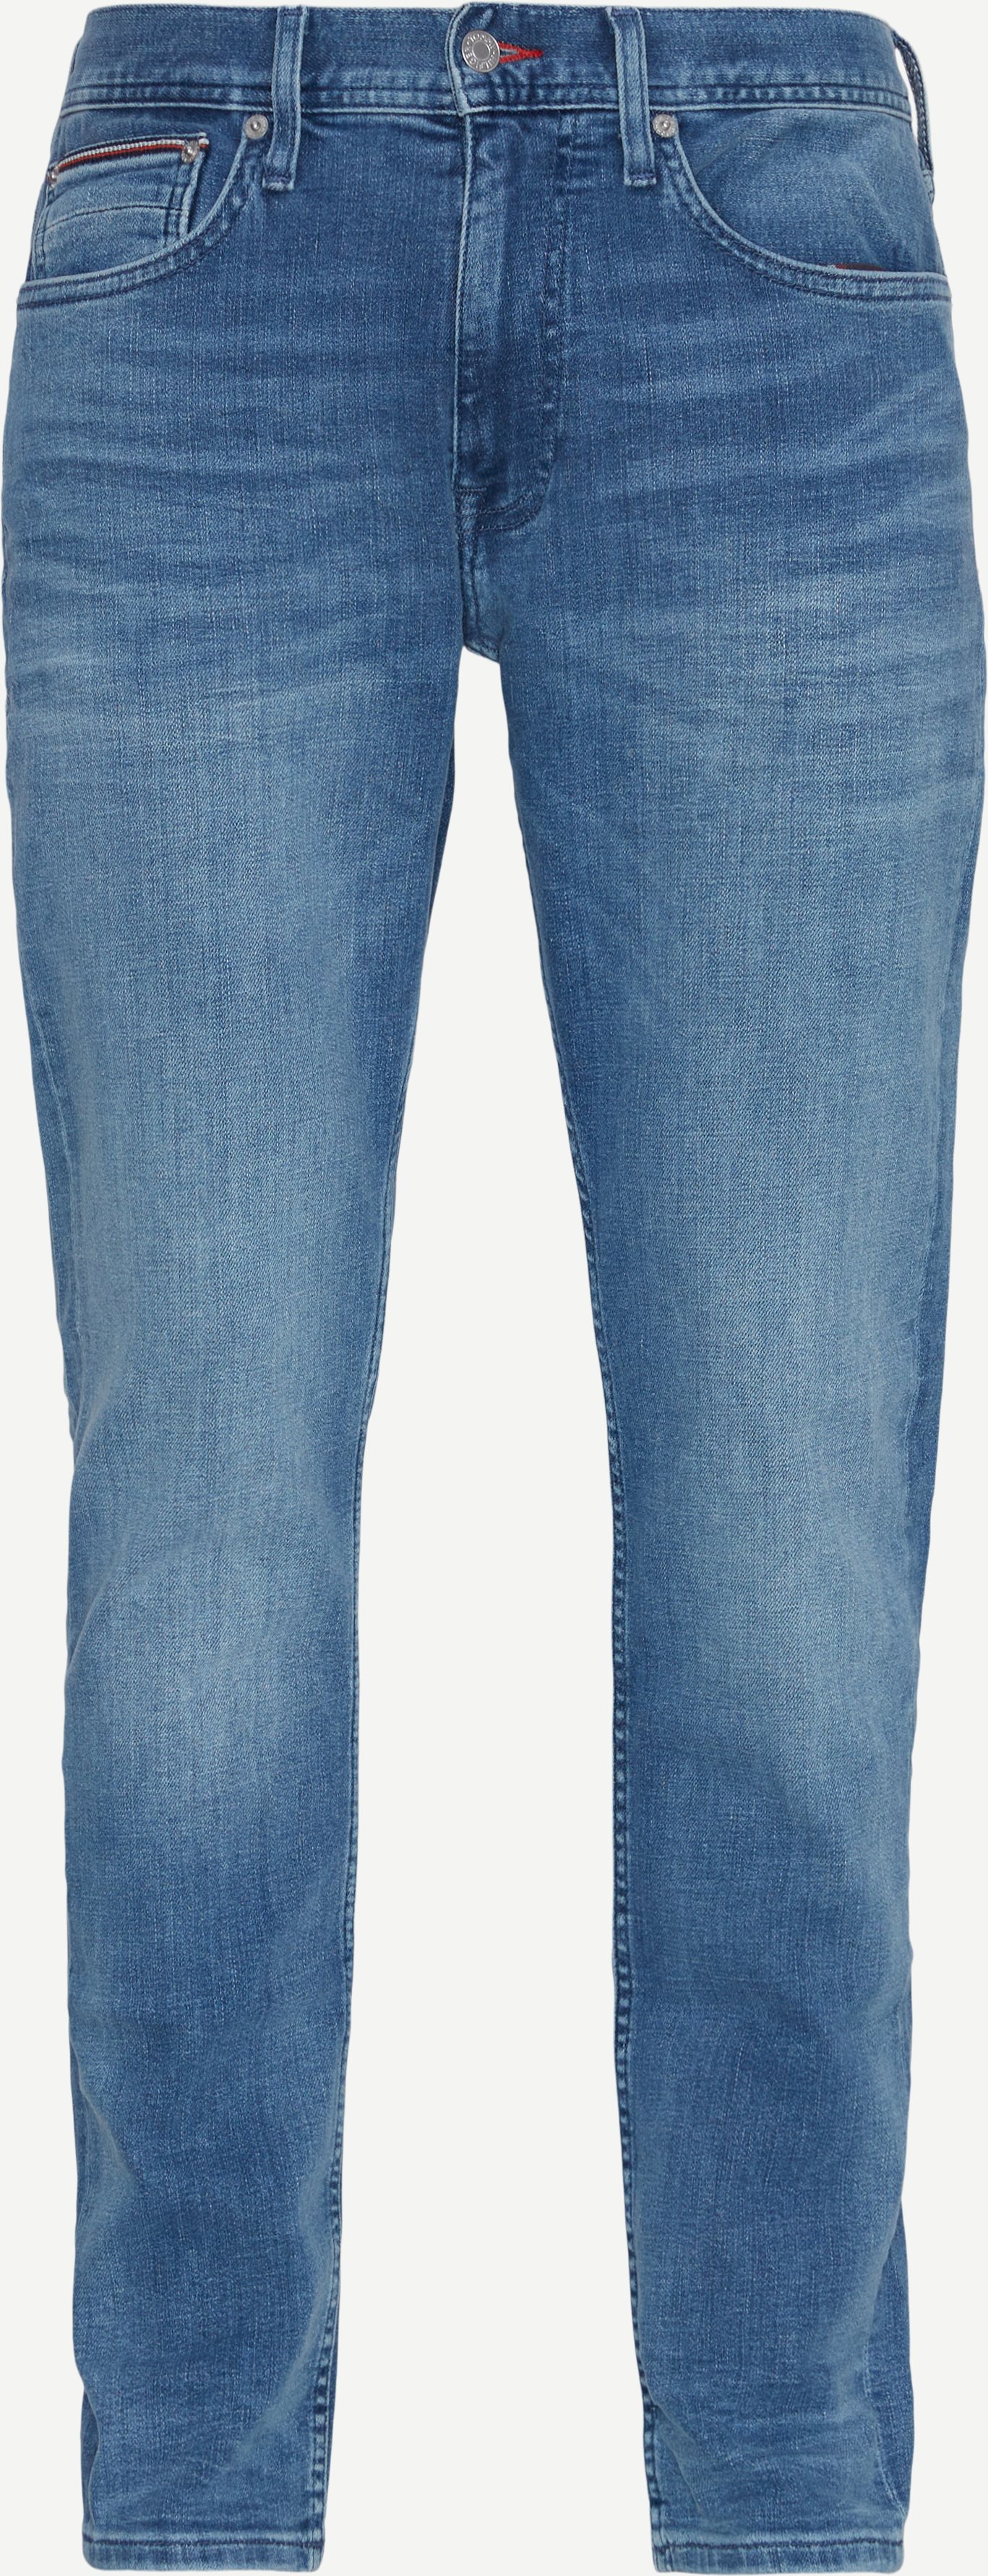 Tommy Hilfiger Jeans 34517 TAPERED HOUSTON PSTR WHALE IND Denim